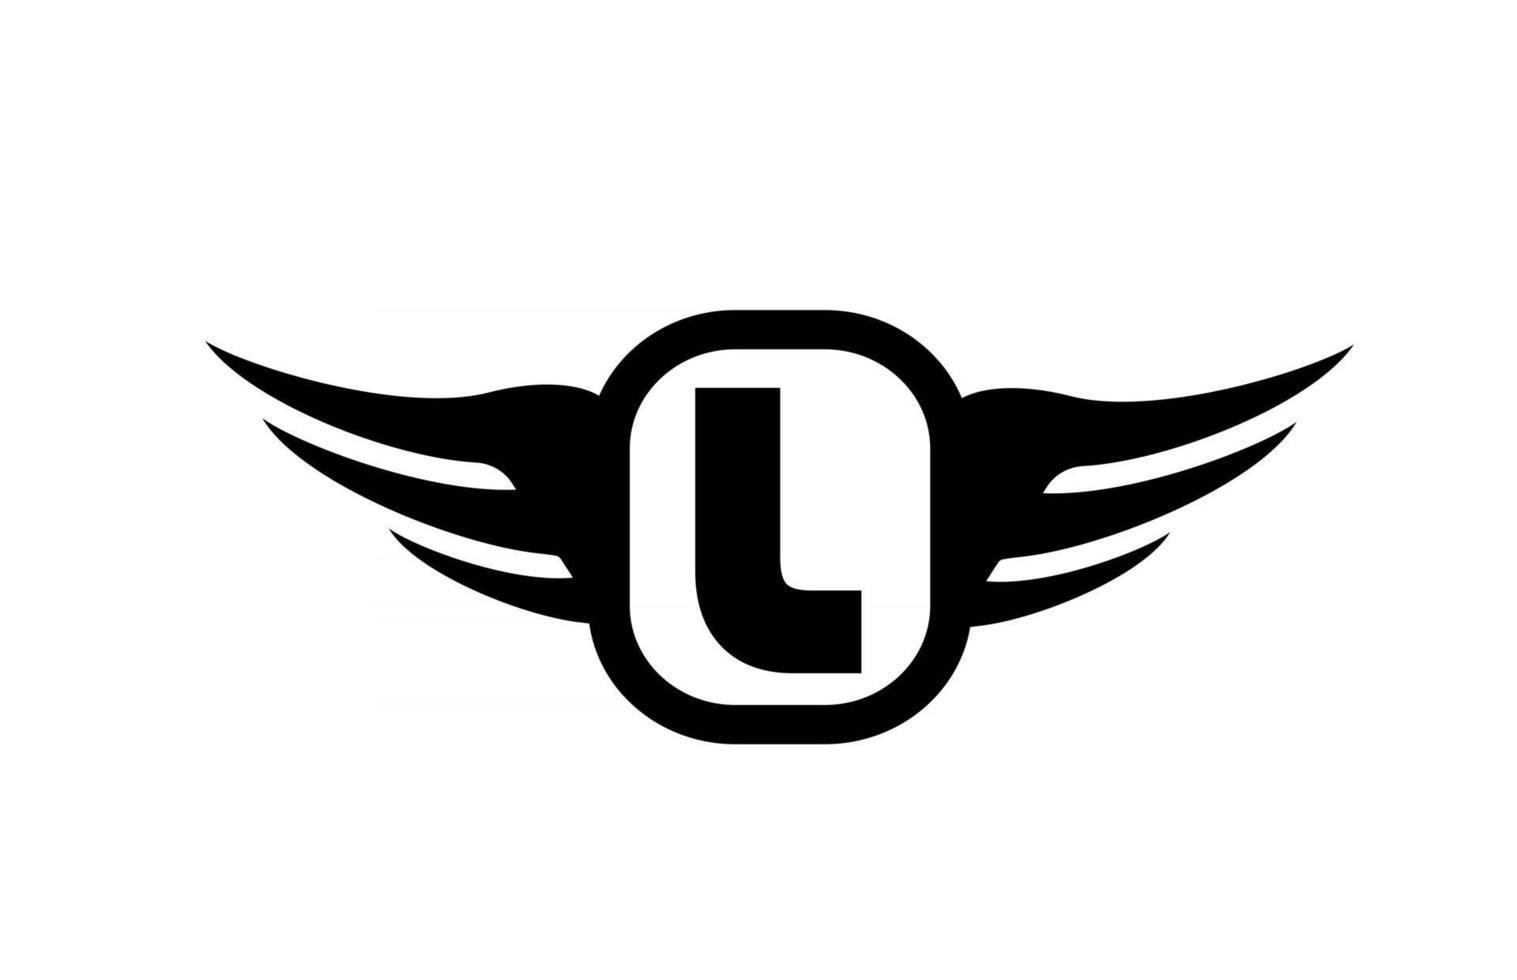 l logo della lettera dell'alfabeto per affari e società con ali e colore bianco e nero. icona di logo aziendale e scritte con un design semplice vettore